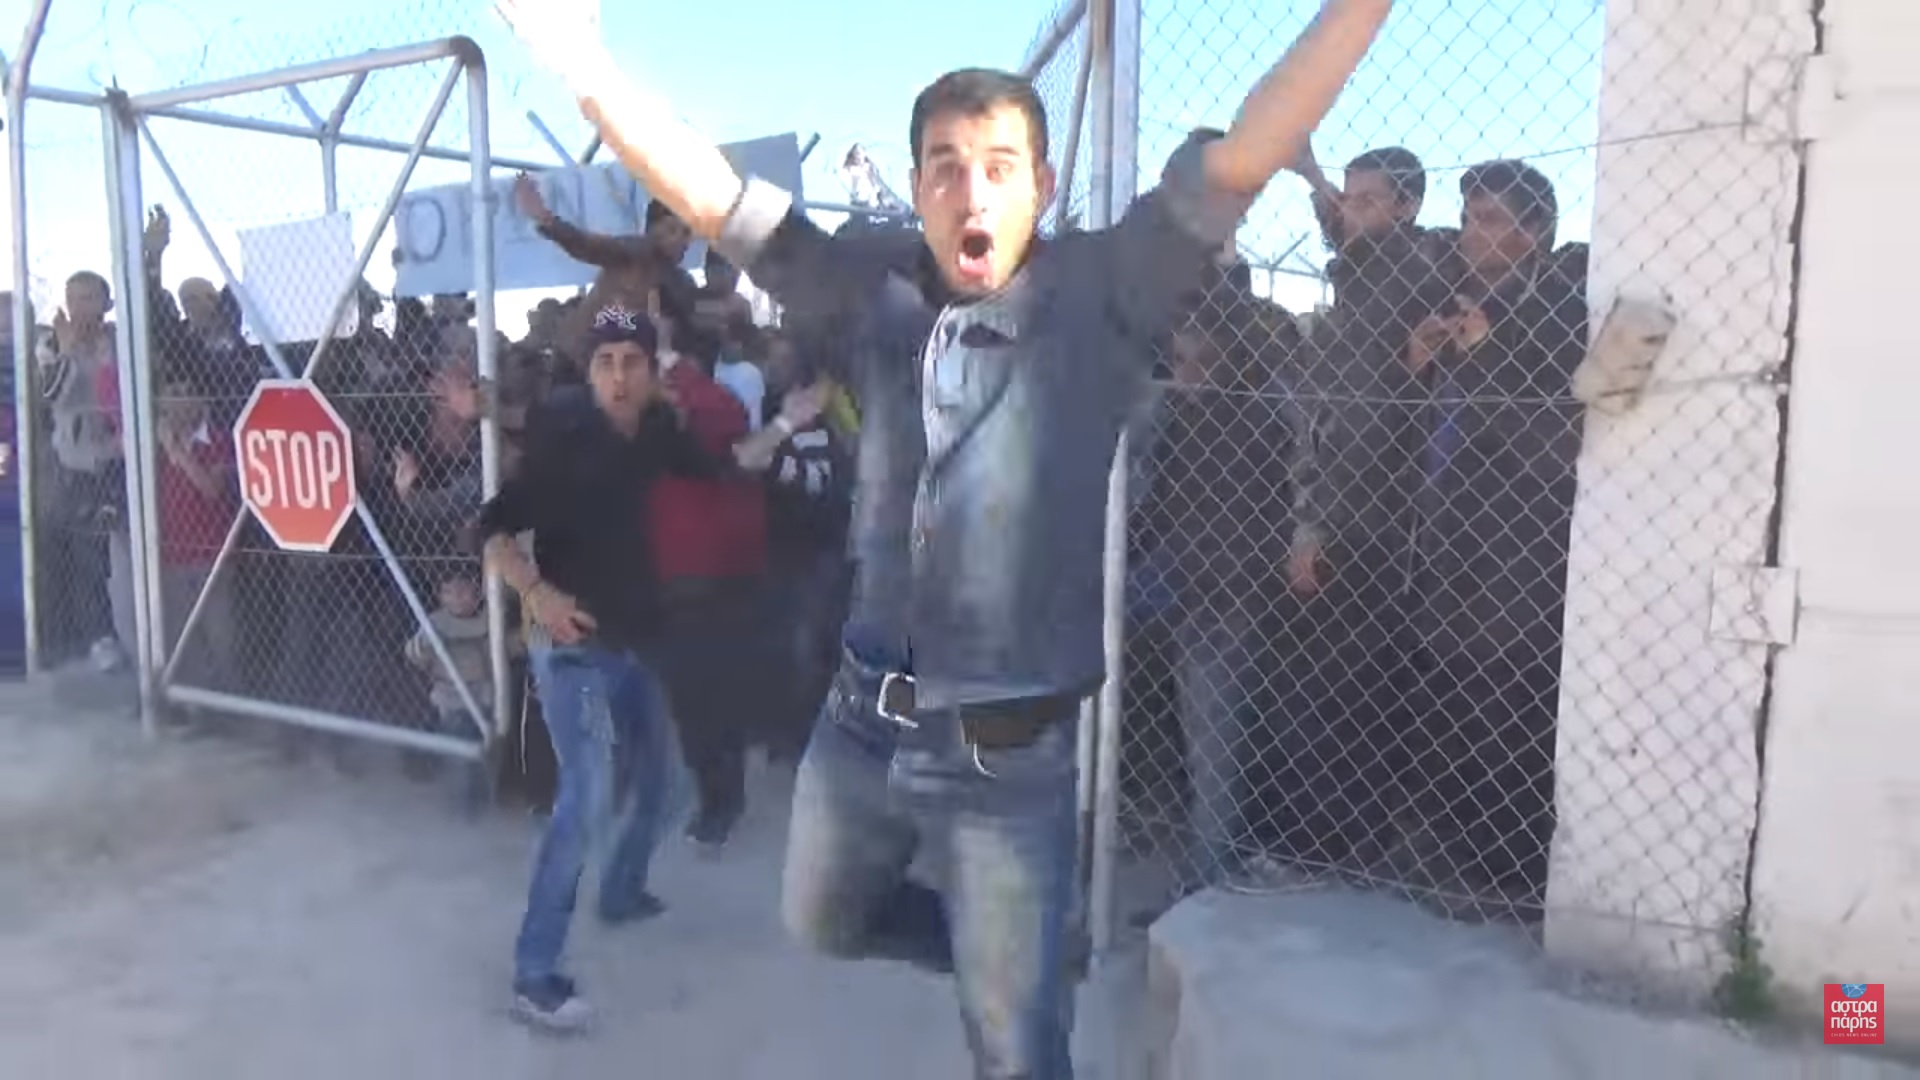 “Ελευθερία”: Διαδήλωση – ξέσπασμα προσφύγων στην ΒΙΑΛ Χίου | Βίντεο